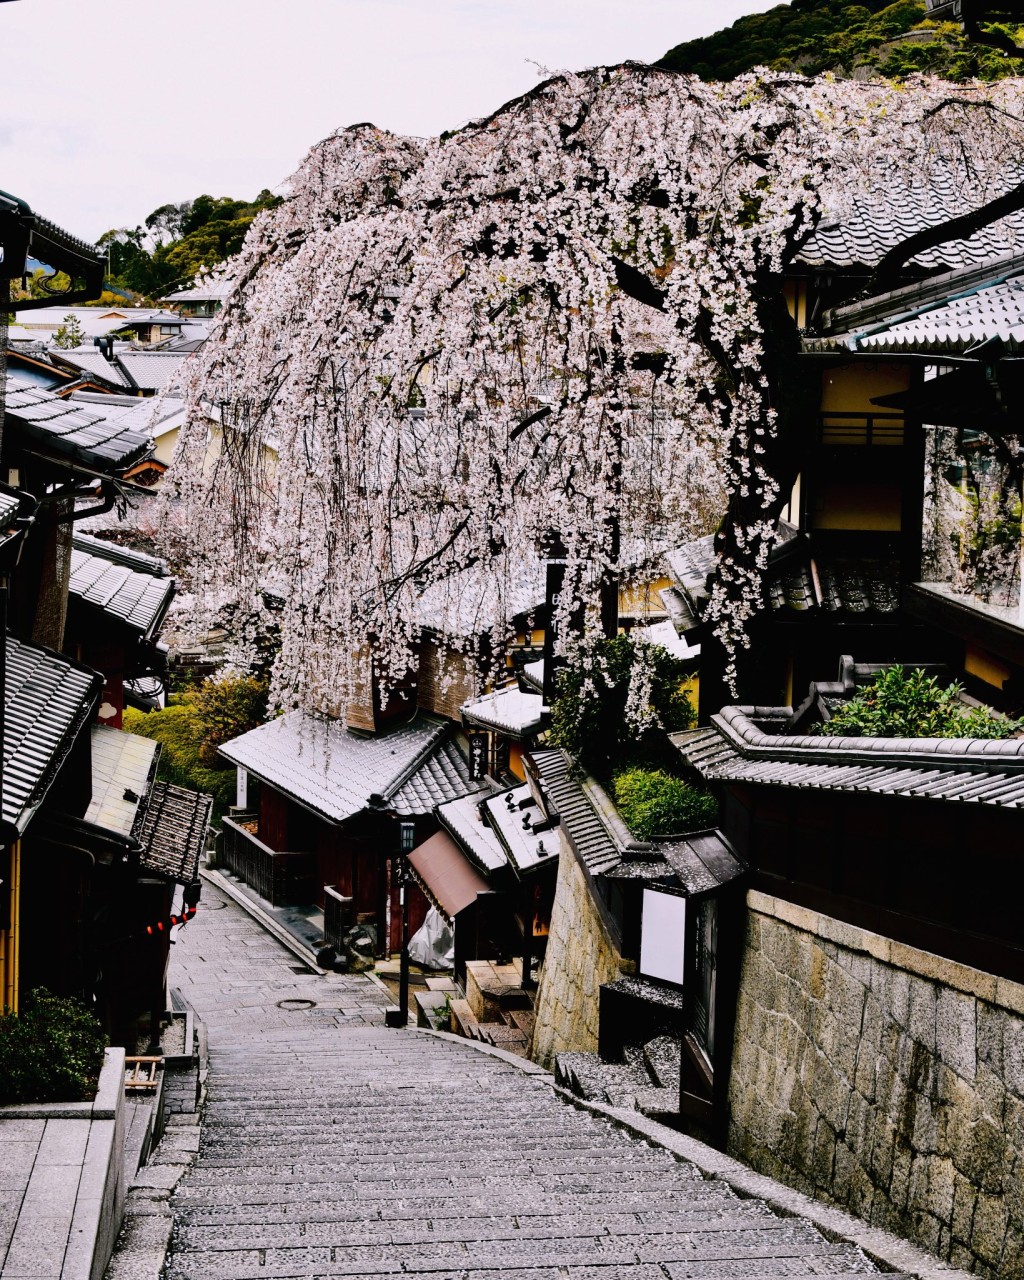 網民發想懷念倒塌櫻花樹的美景。 X